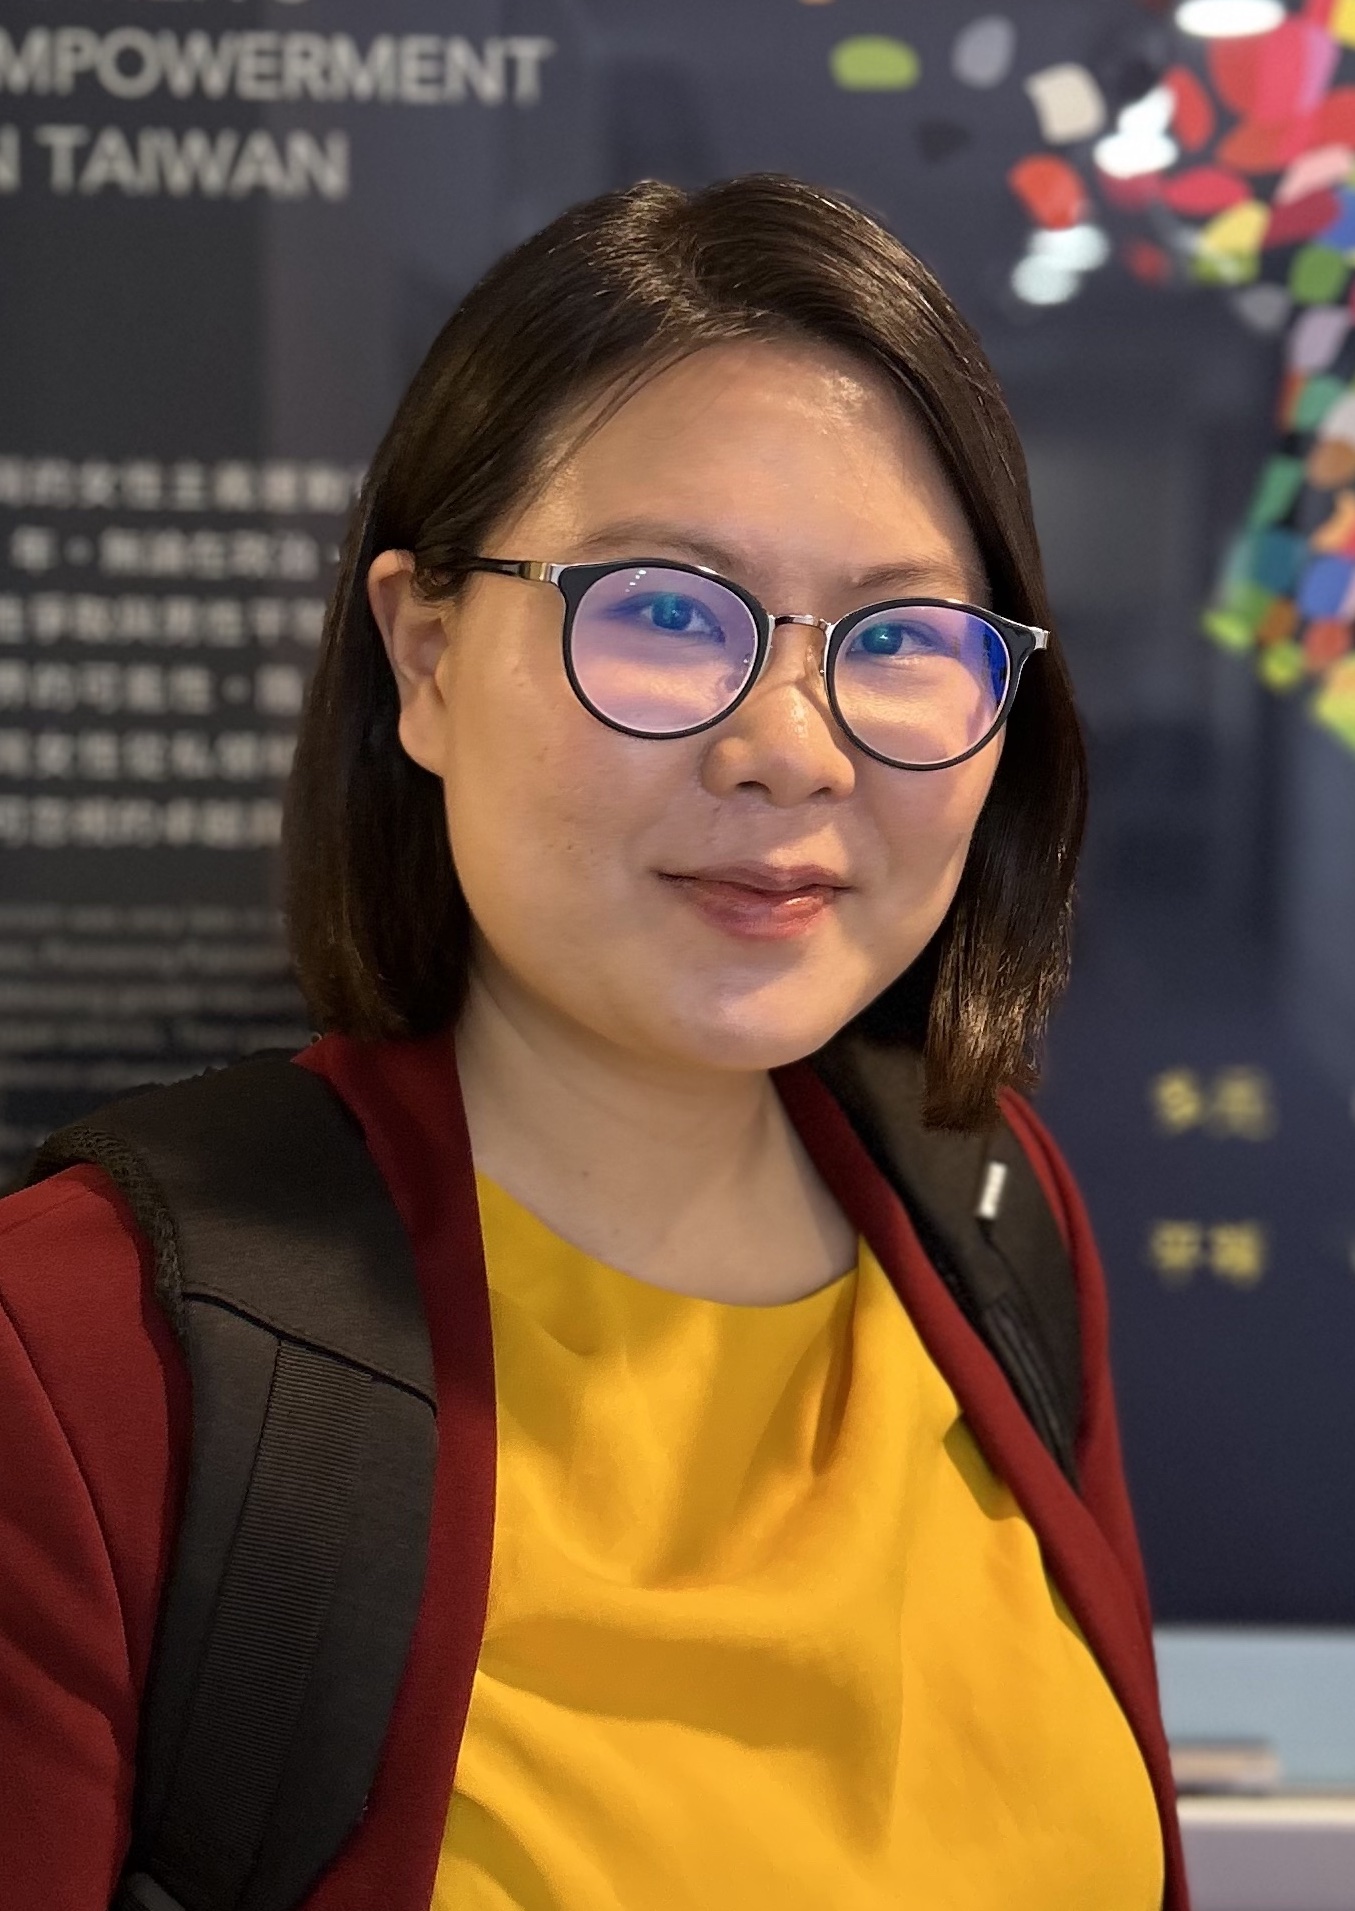 慶萱微笑看向鏡頭，她是一名台灣女性，戴著眼鏡、身穿暗紅色的西裝外套與黃色上衣